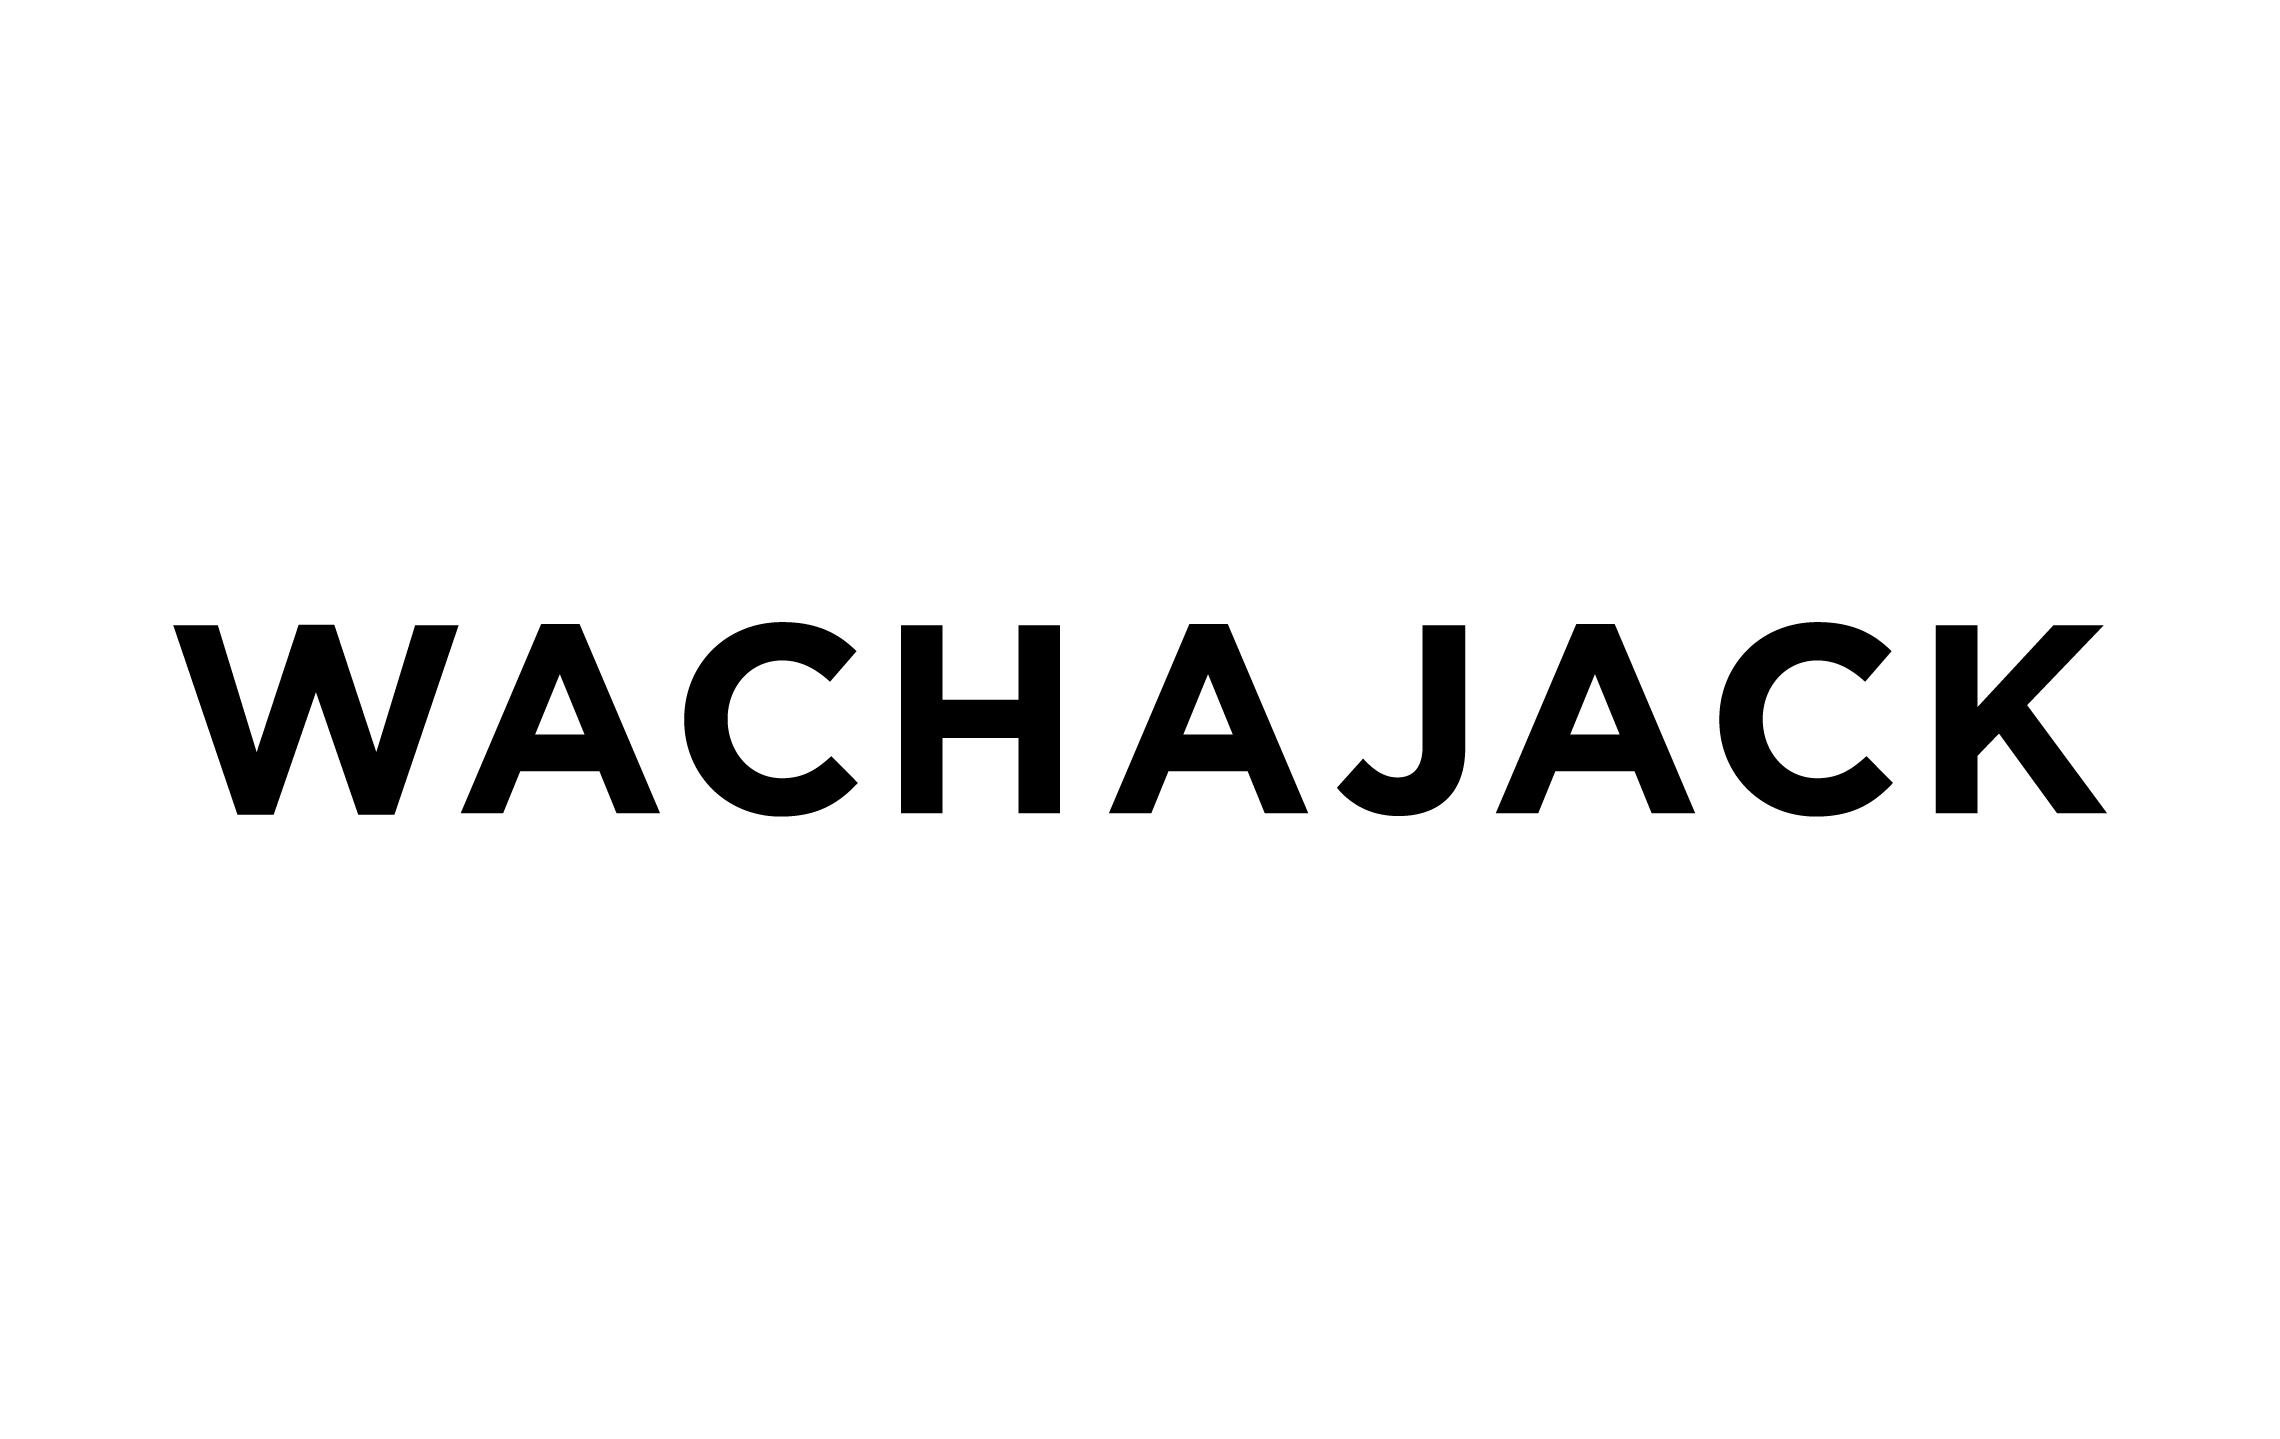 WACHAJACK